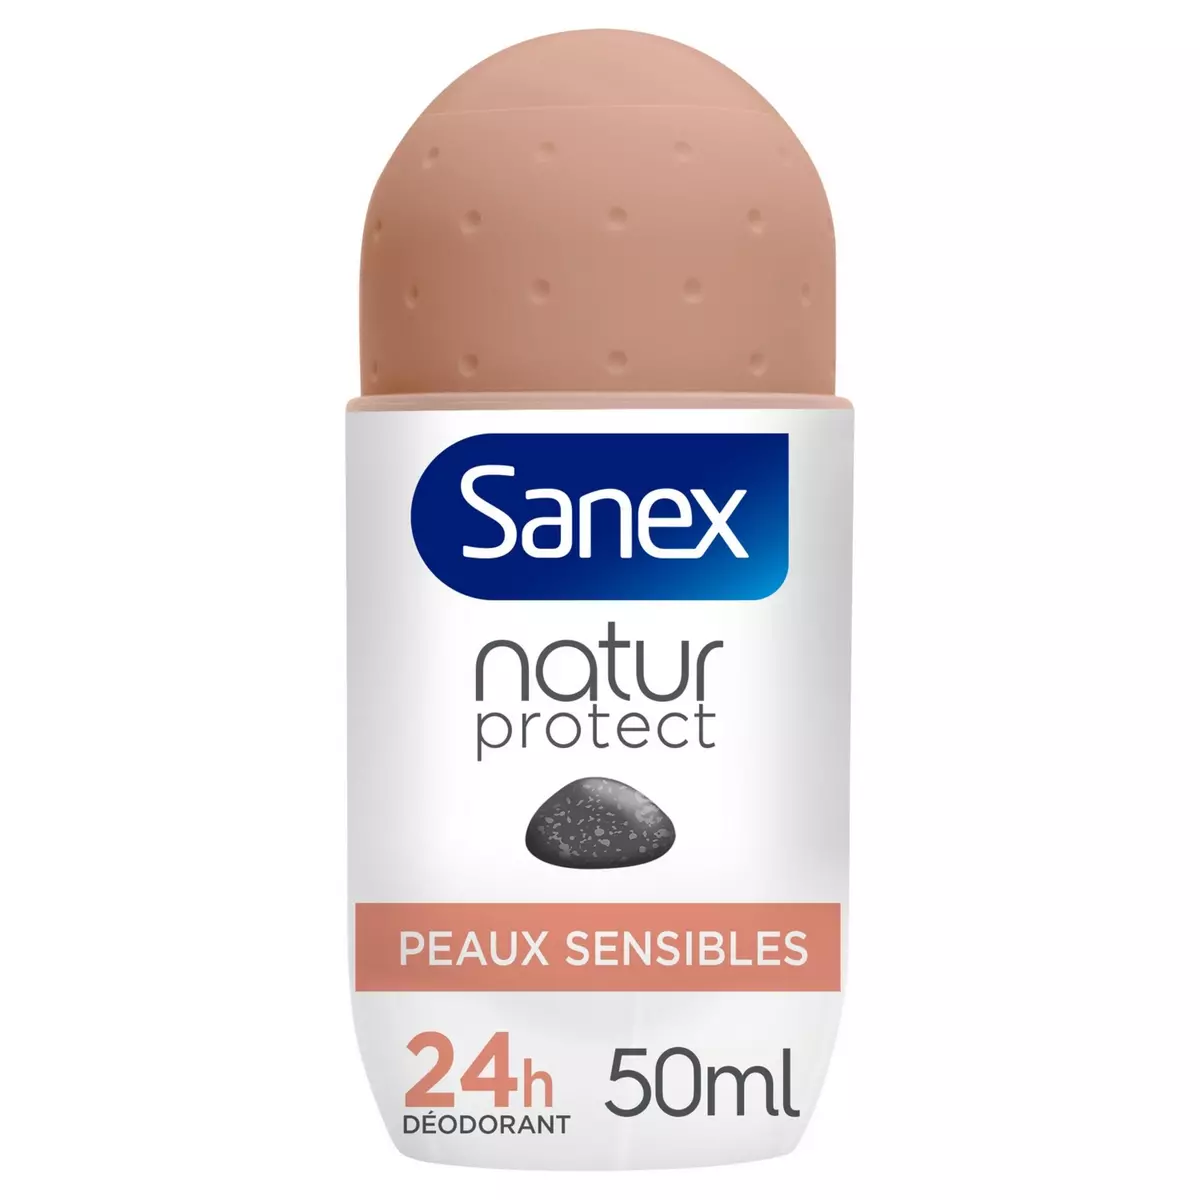 SANEX Natur protect Déodorant bille femme 24h peaux sensibles à la pierre d'alun 50ml